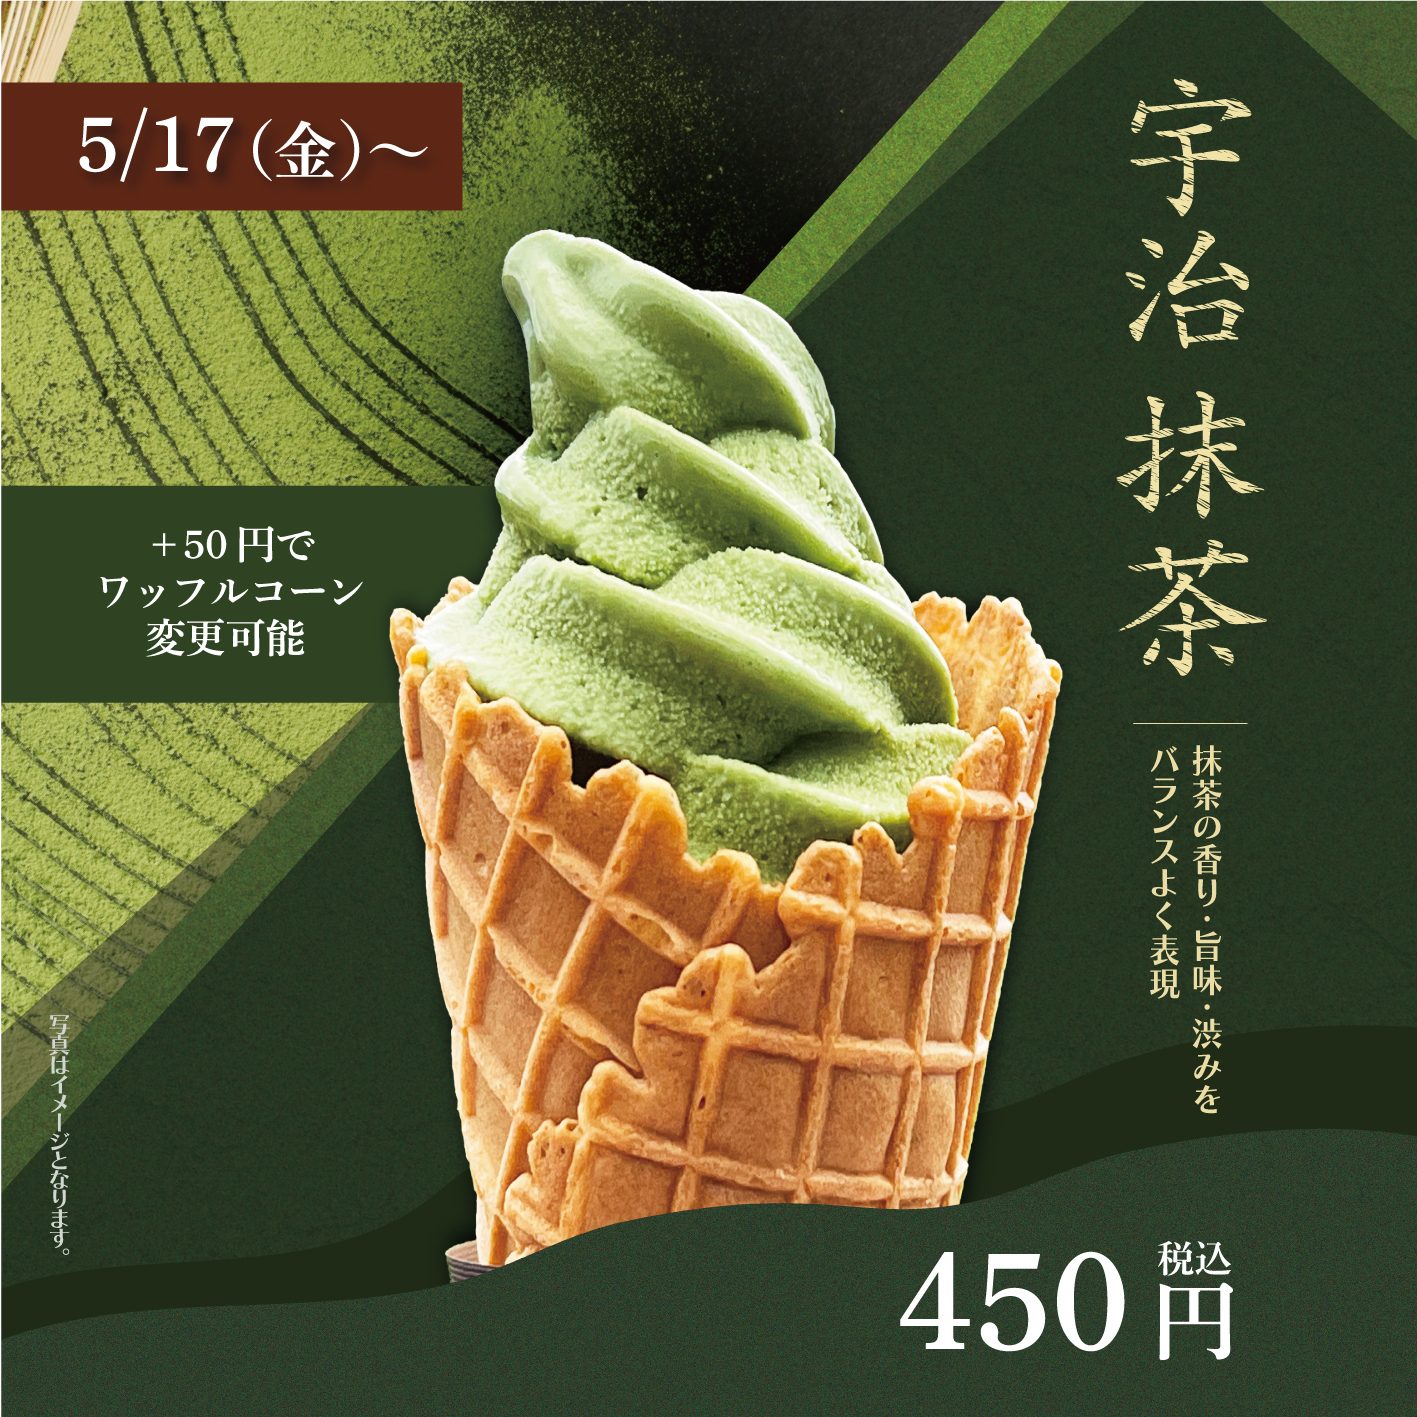 【cafe 26】5月17日(金)より「宇治抹茶ソフト」販売いたします♪